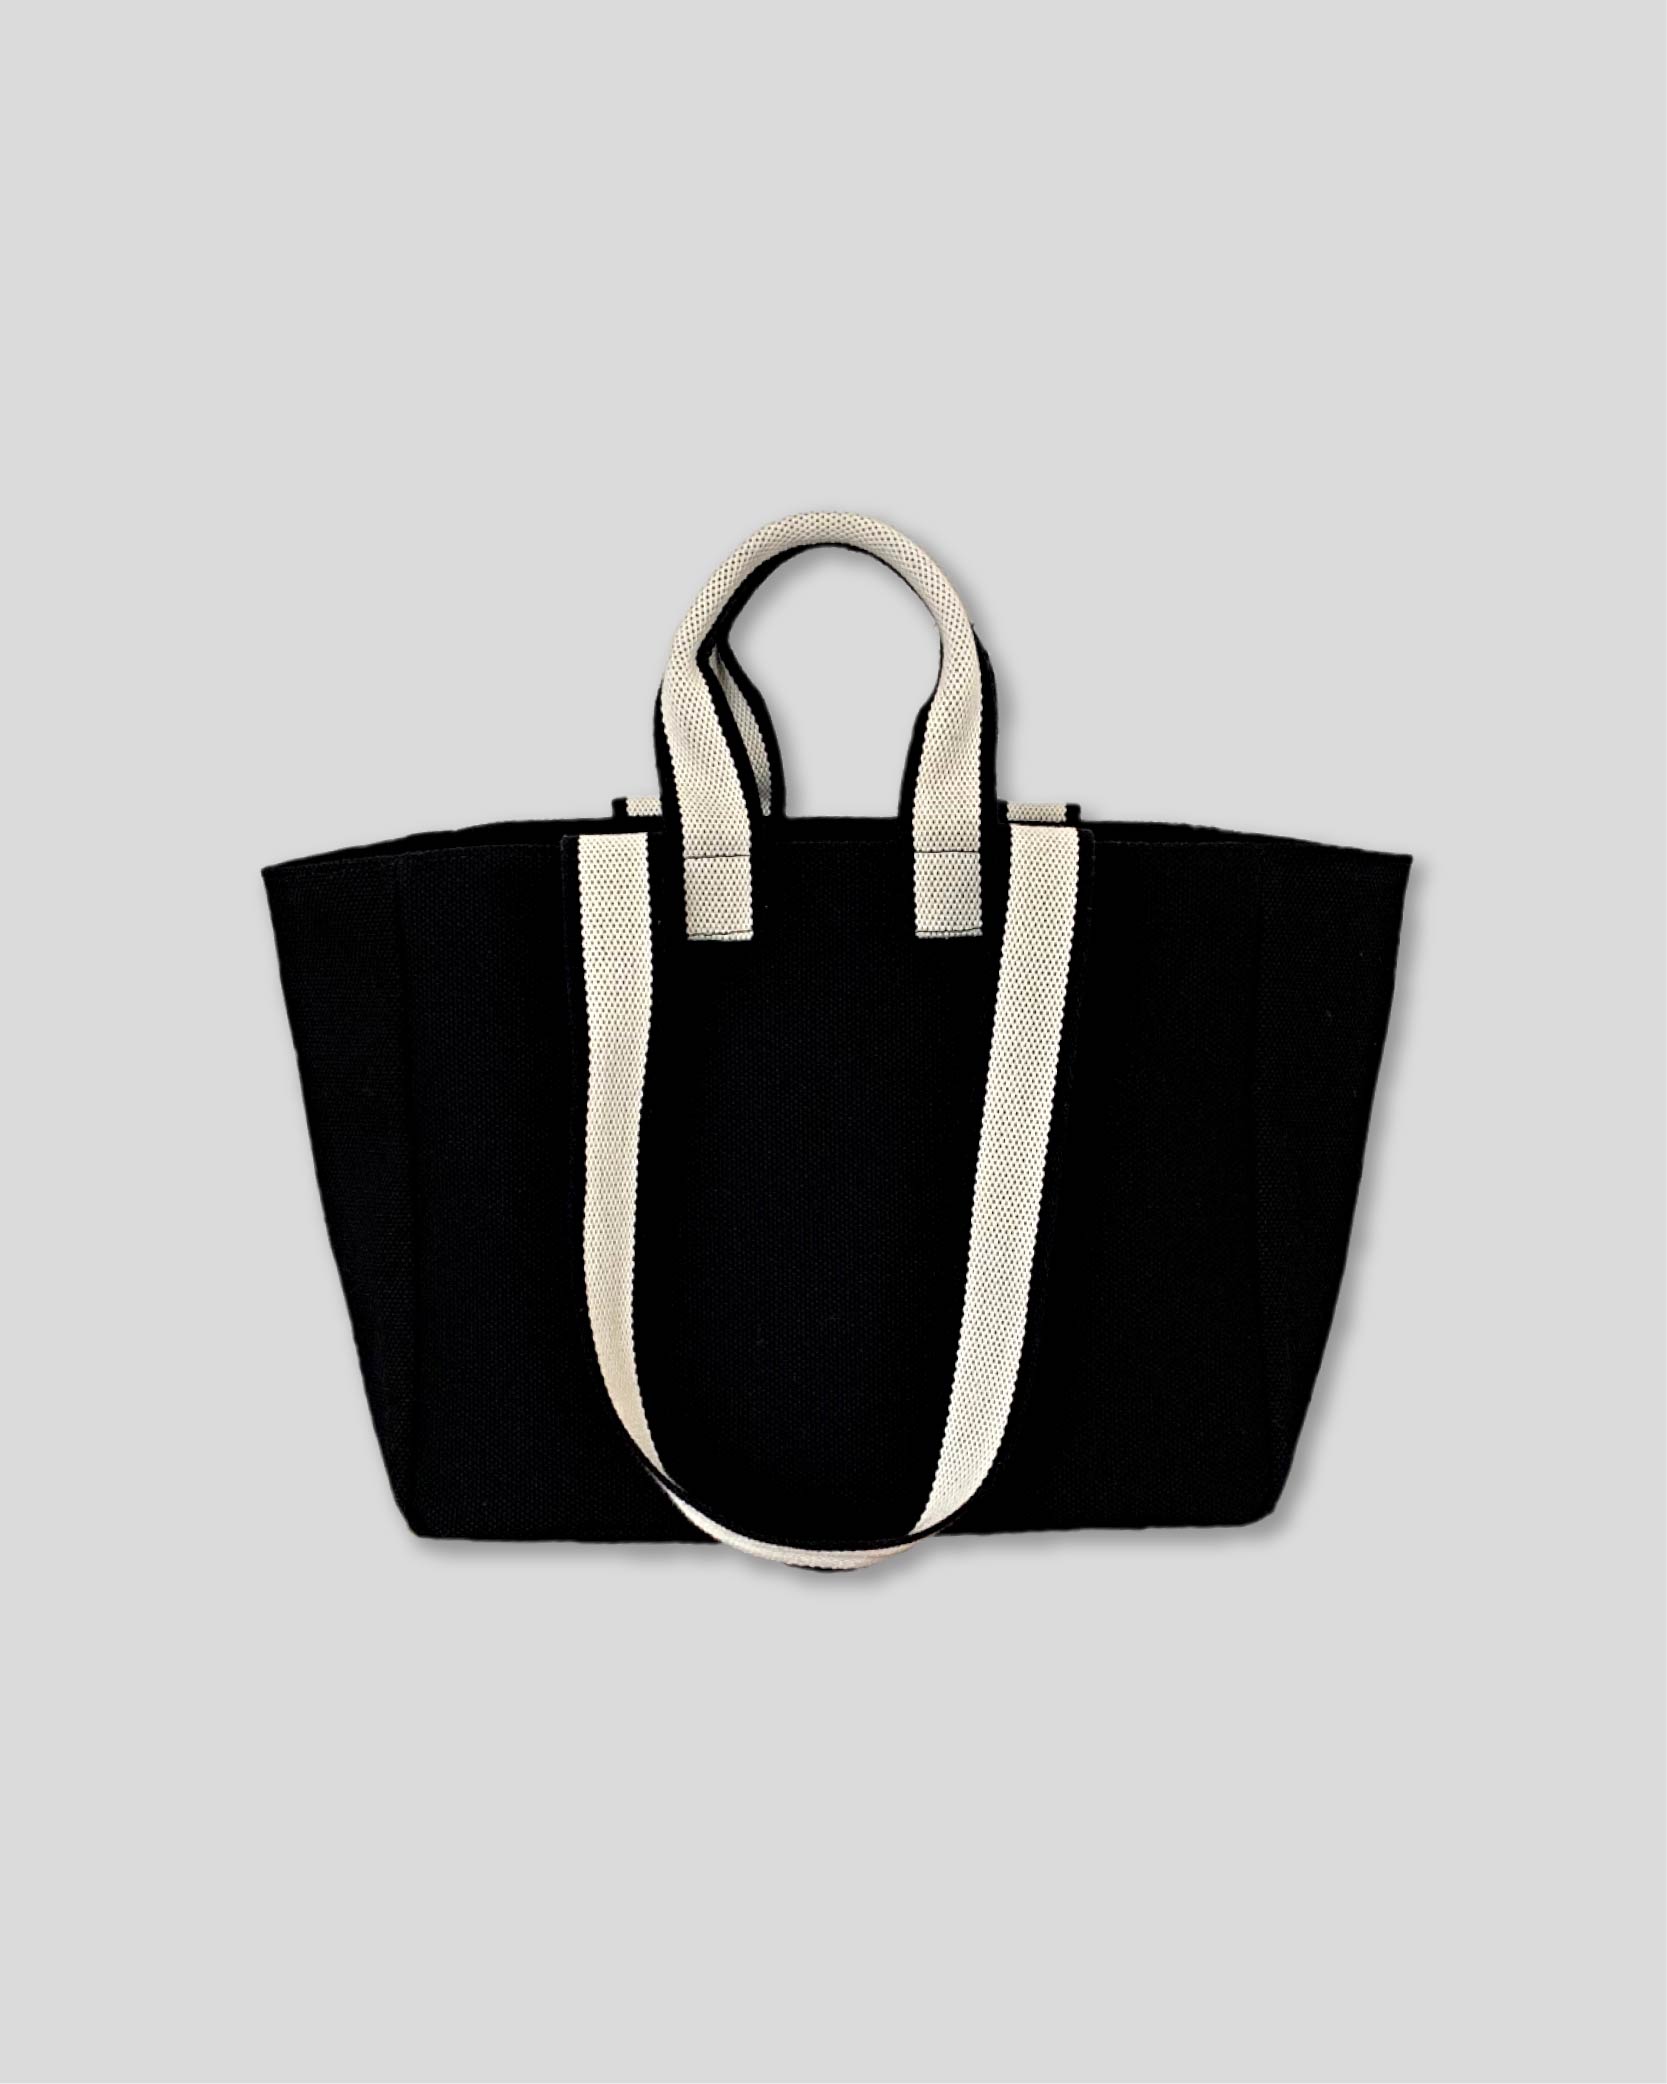 언폴드,unfold,에코백,파우치,천가방,코스터,백팩,스크런치Two-tone strap bag (black)